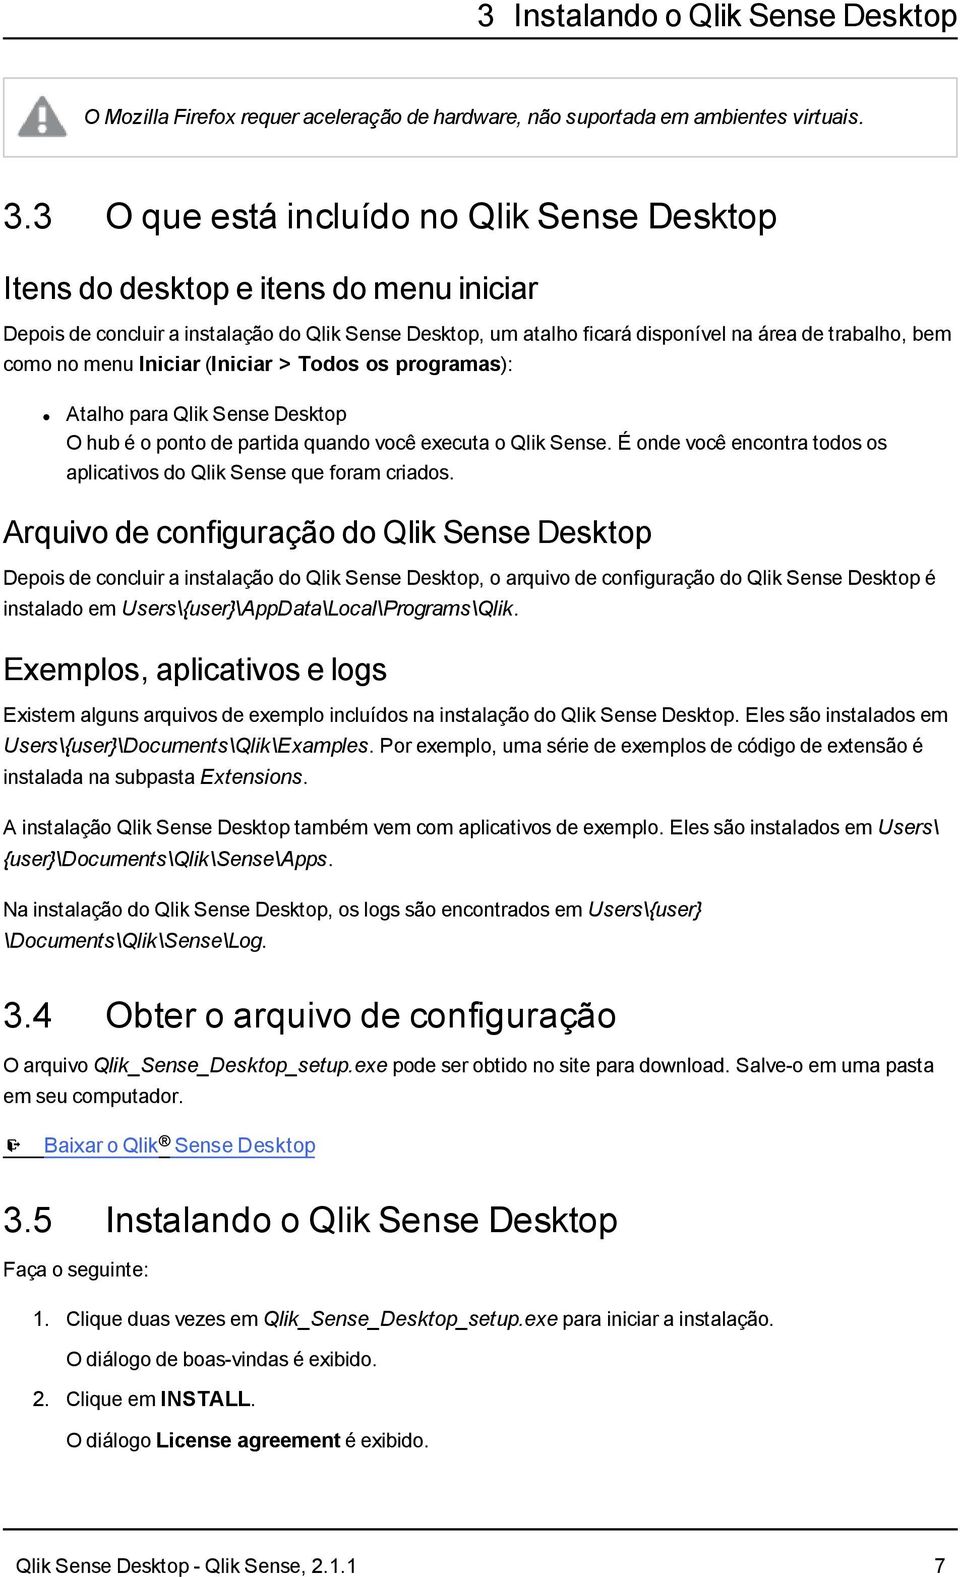 no menu Iniciar (Iniciar > Todos os programas): Atalho para Qlik Sense Desktop O hub é o ponto de partida quando você executa o Qlik Sense.